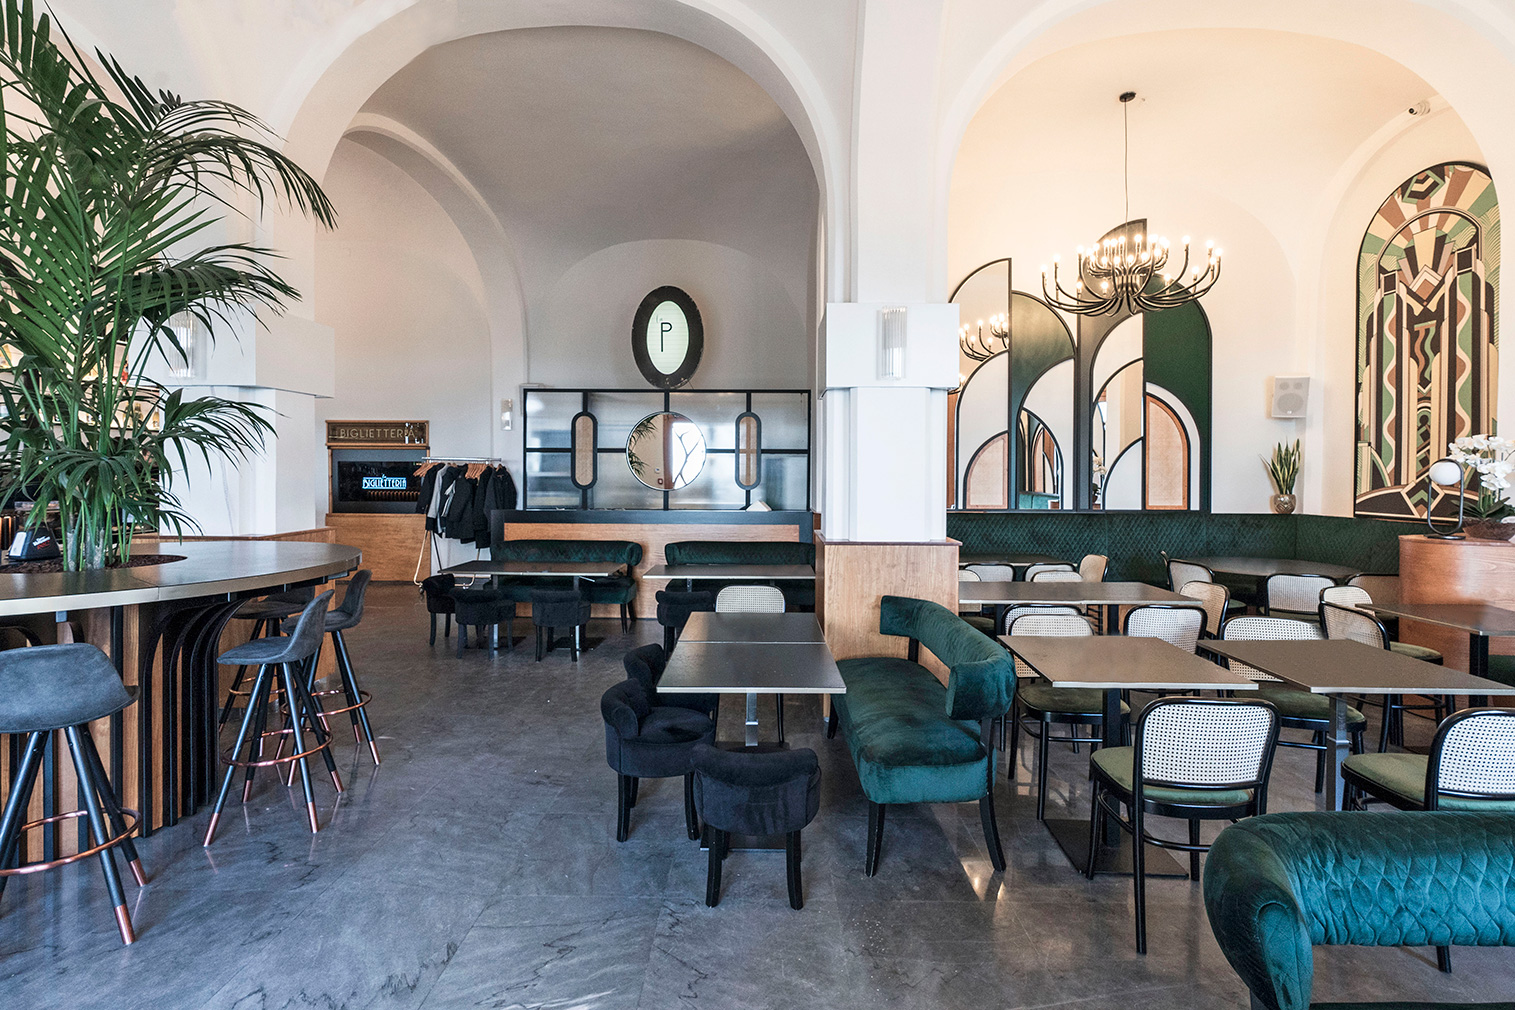 A box office is reborn as 'New Deco' restaurant La Biglietteria in Bari